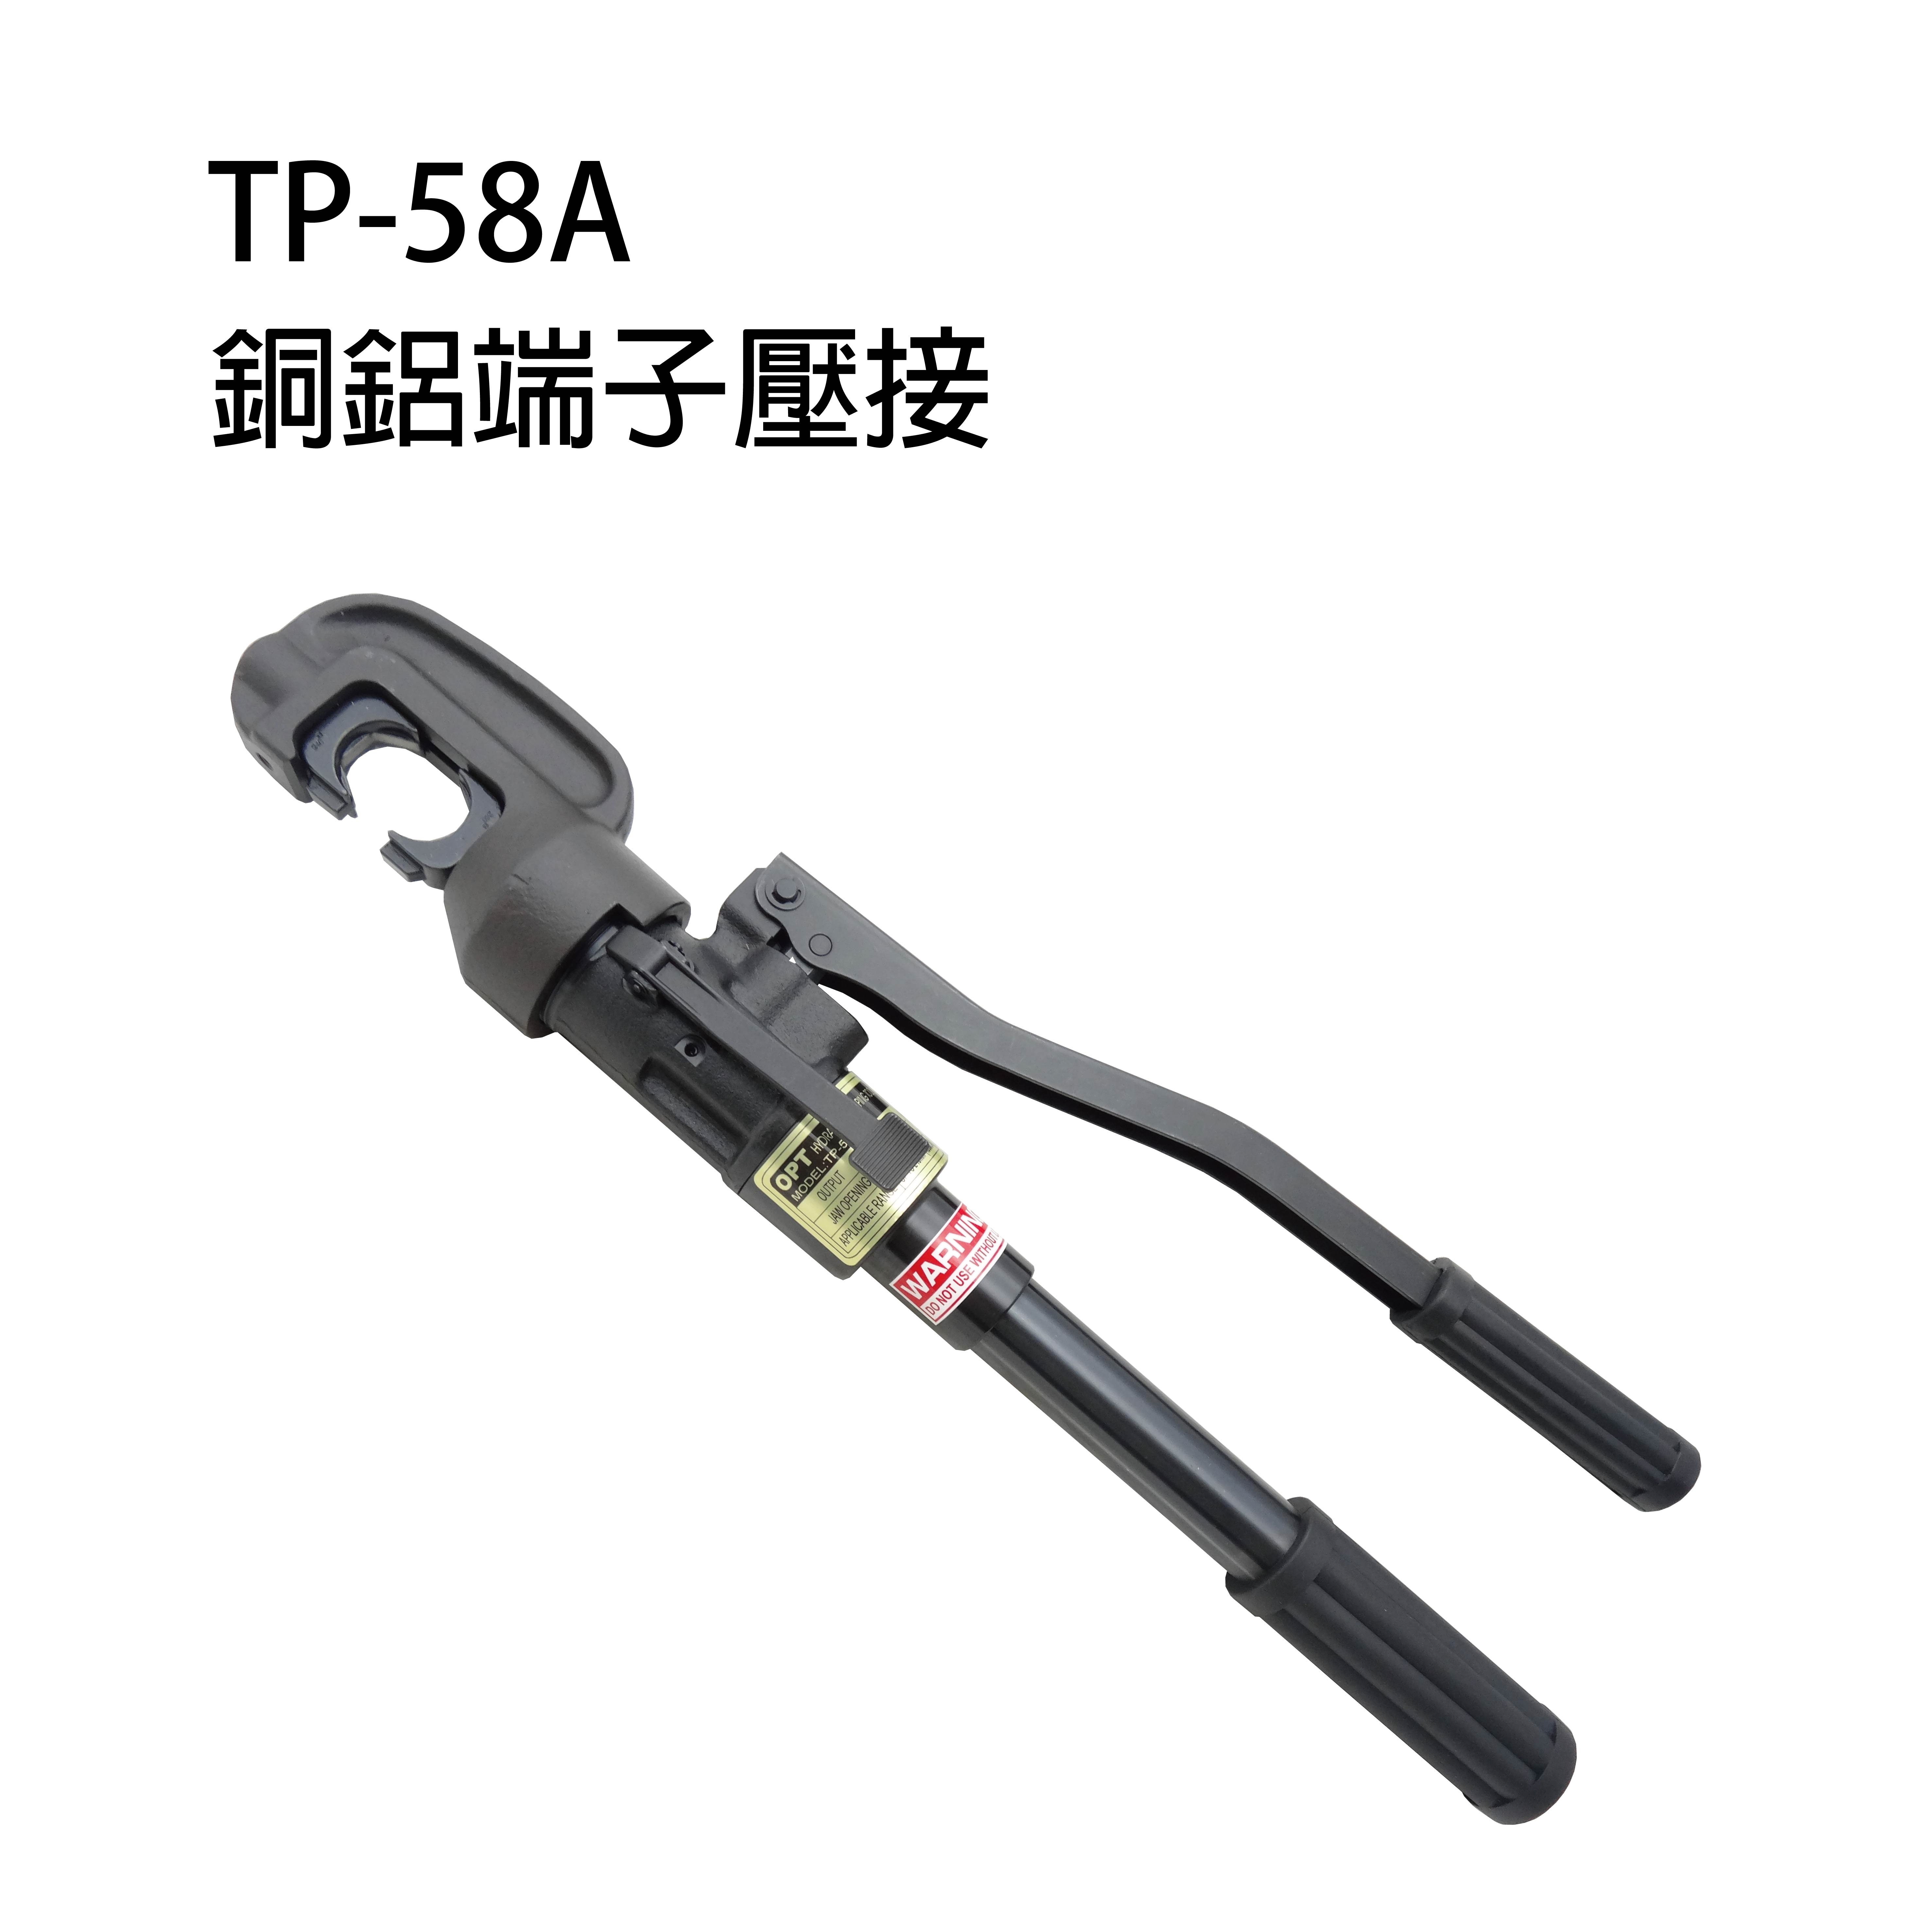 TP-58A MANUAL HYDRAULIC CRIMPING TOOLS-TP-58A